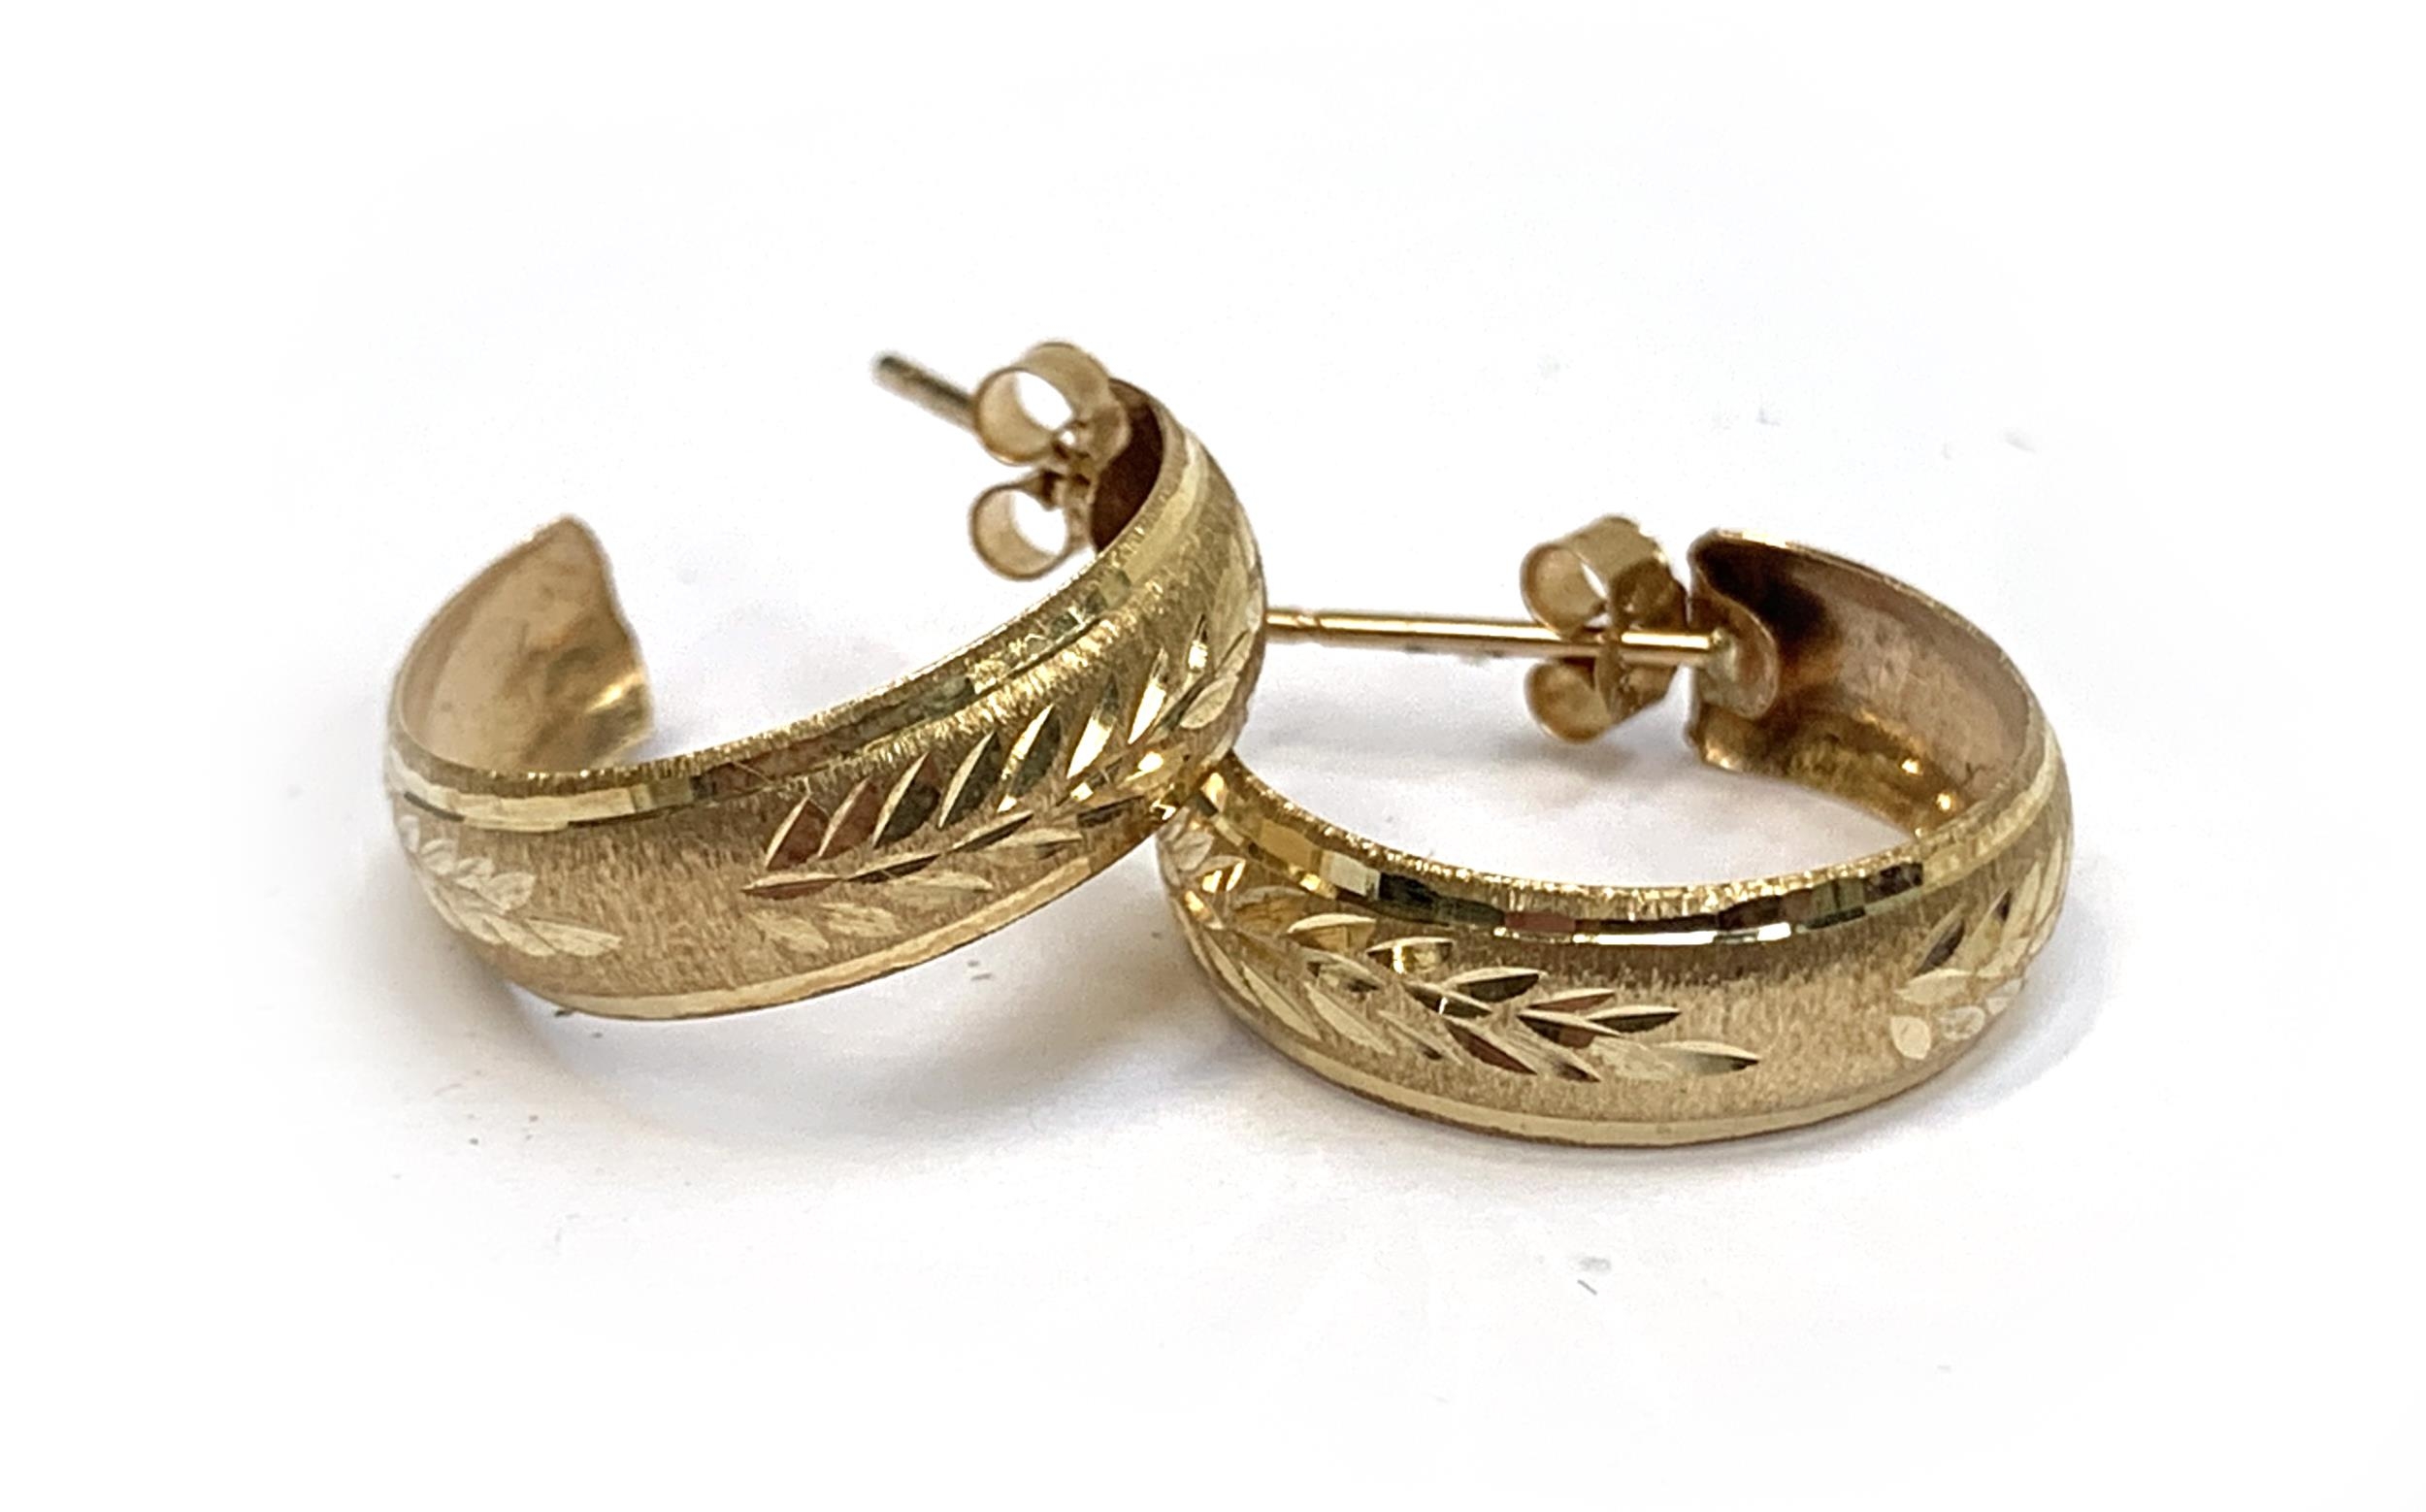 A pair of yellow metal hoop earrings, 1.1g